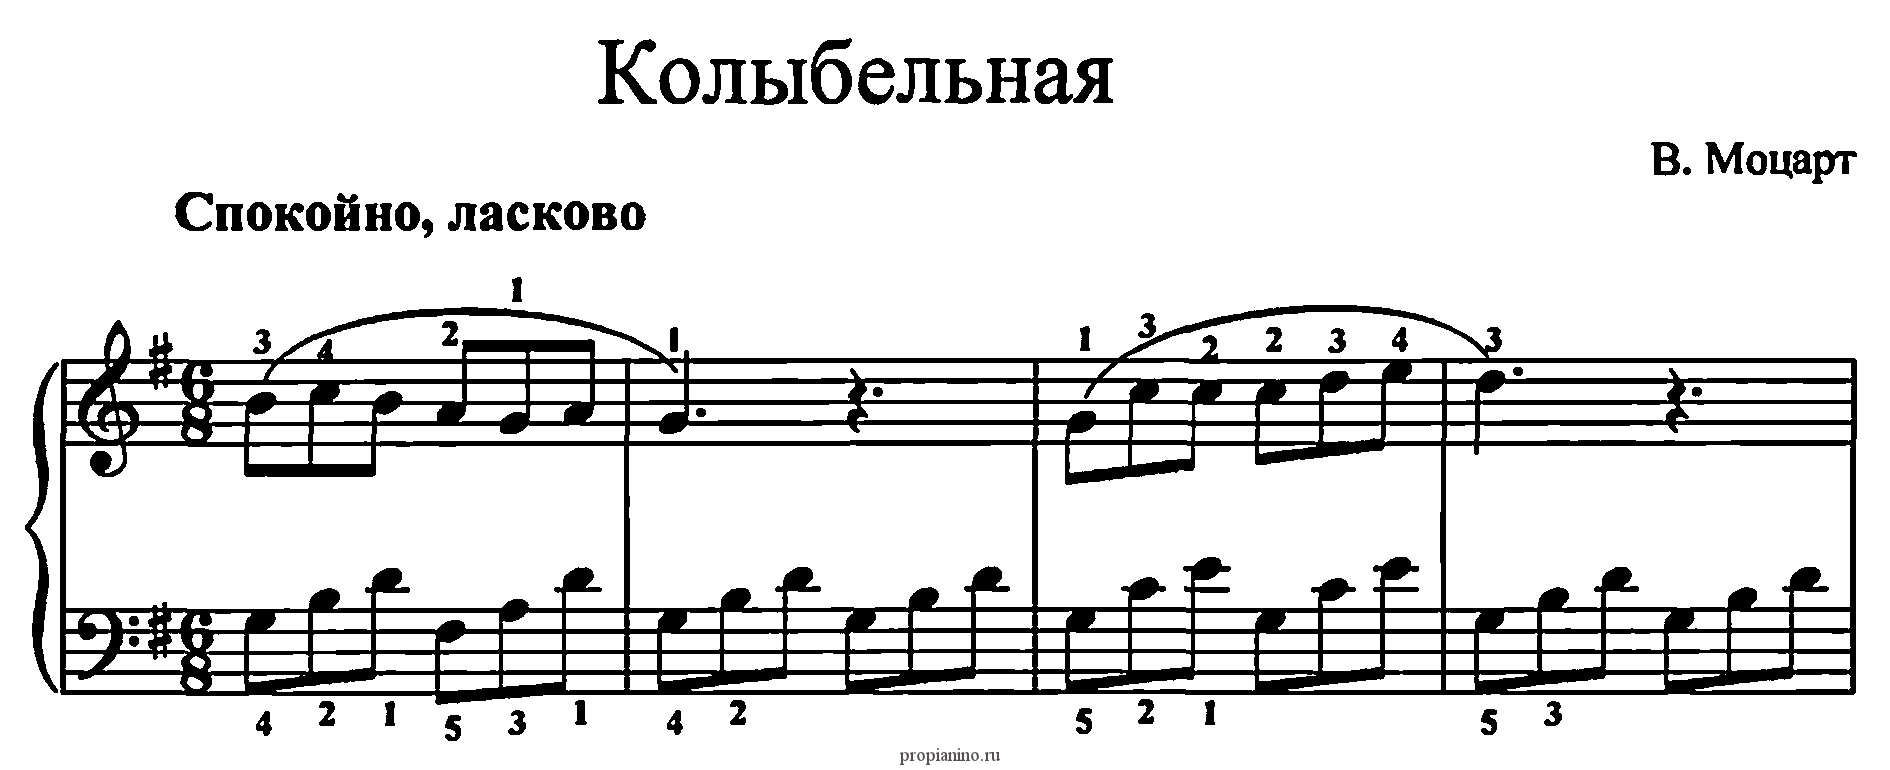 Бетховен колыбельная